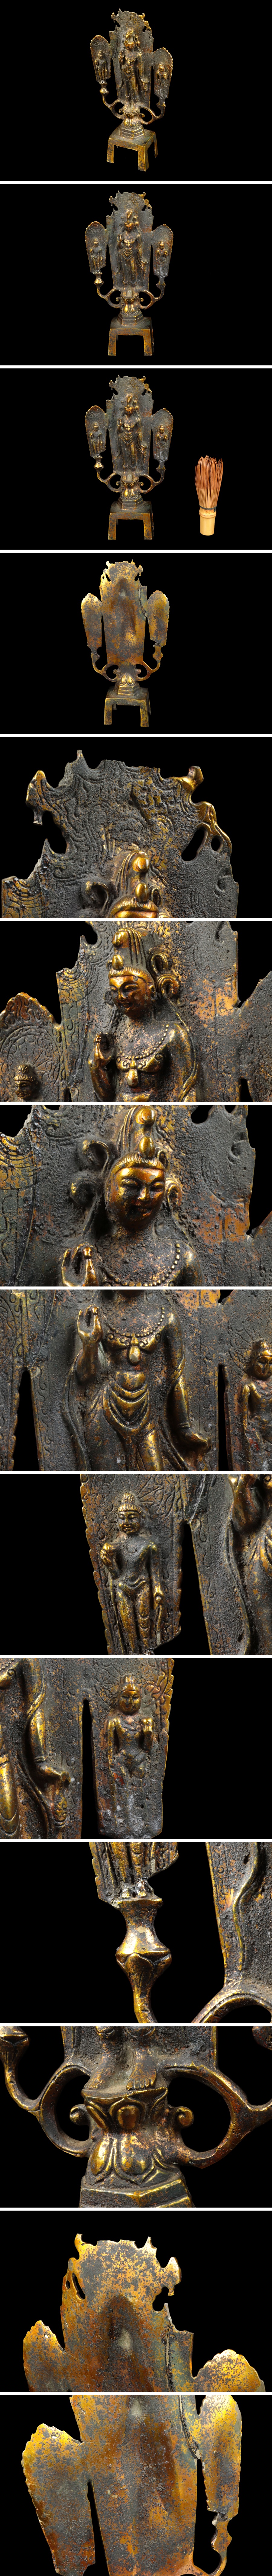 即発送仏教美術 銅器 塗金 菩薩像 仏像 置物 高さ:約23cm 骨董品 美術品 0254tfz 仏像